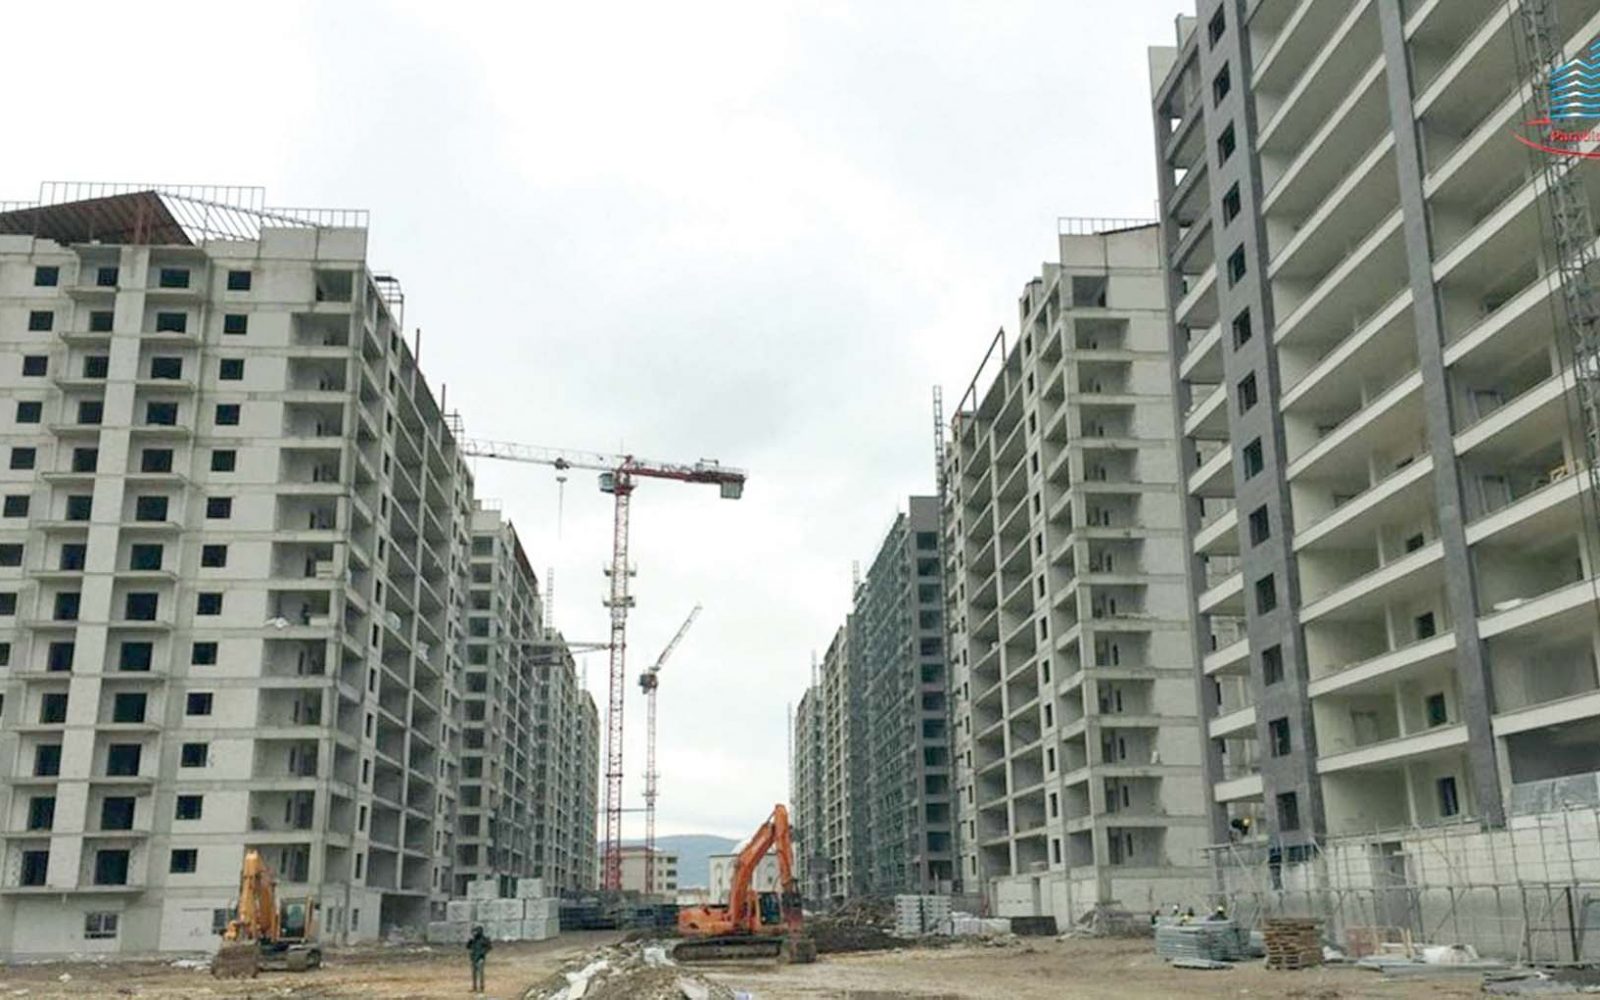 اتحاد المقاولين: فرصة استثمارية لبناء 414 ألف وحدة سكنية بالعراق